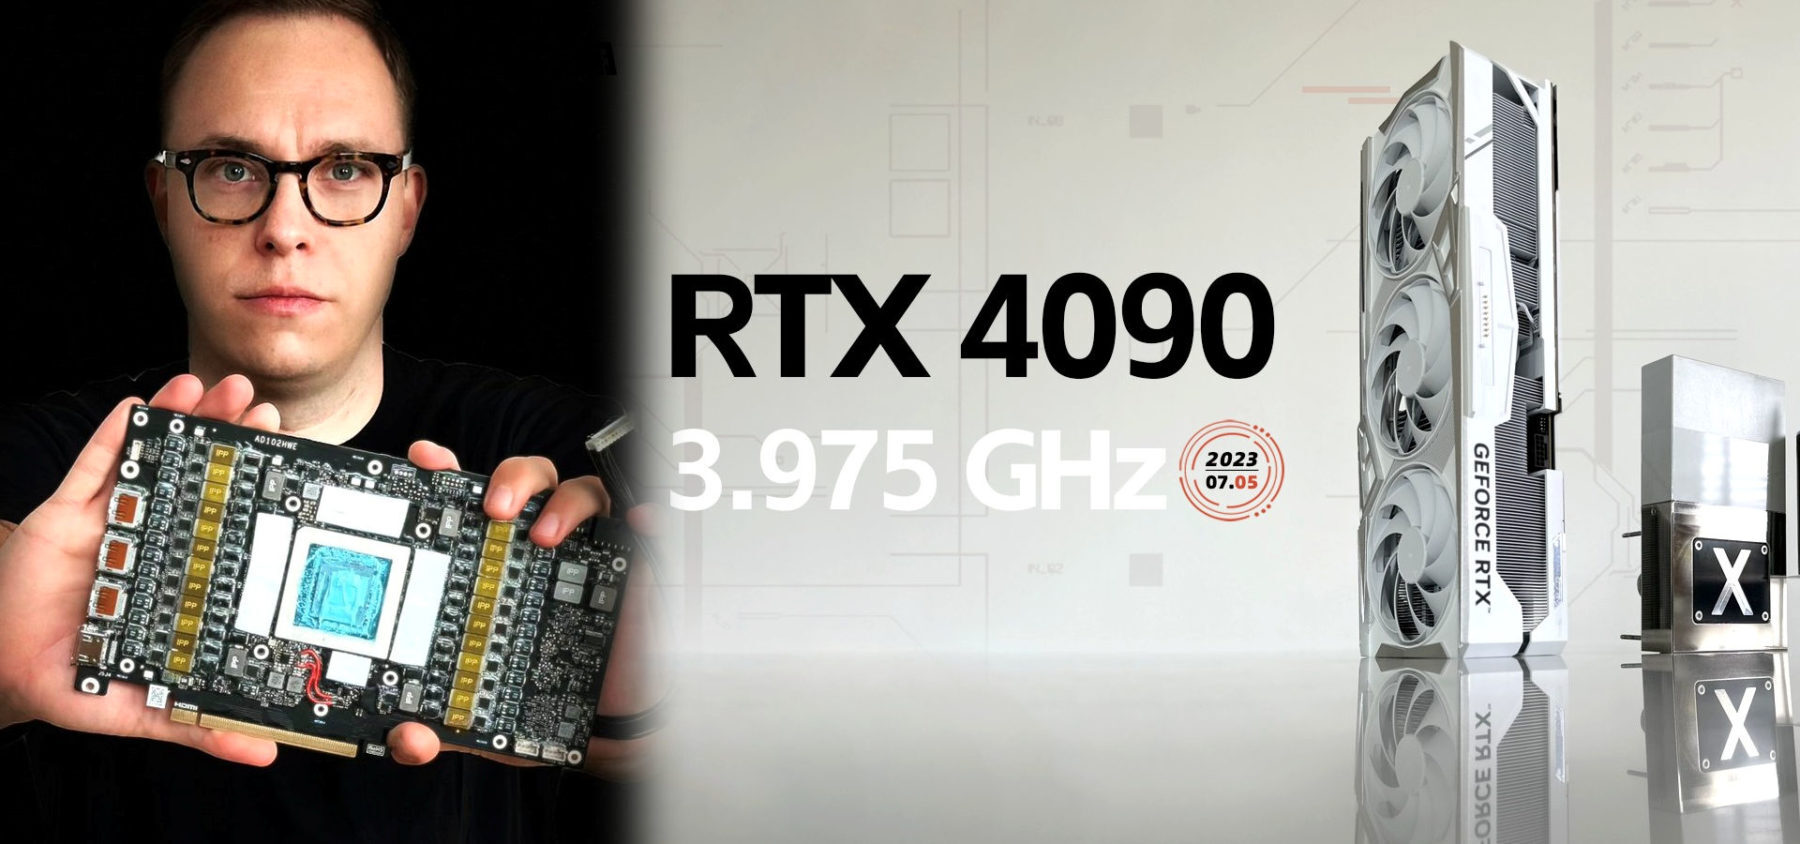 COLORFUL GEFORCE RTX 4090 IGAME LAB GPU UPPGER VÄRLDSREKORD PÅ 3,975 GHZ 